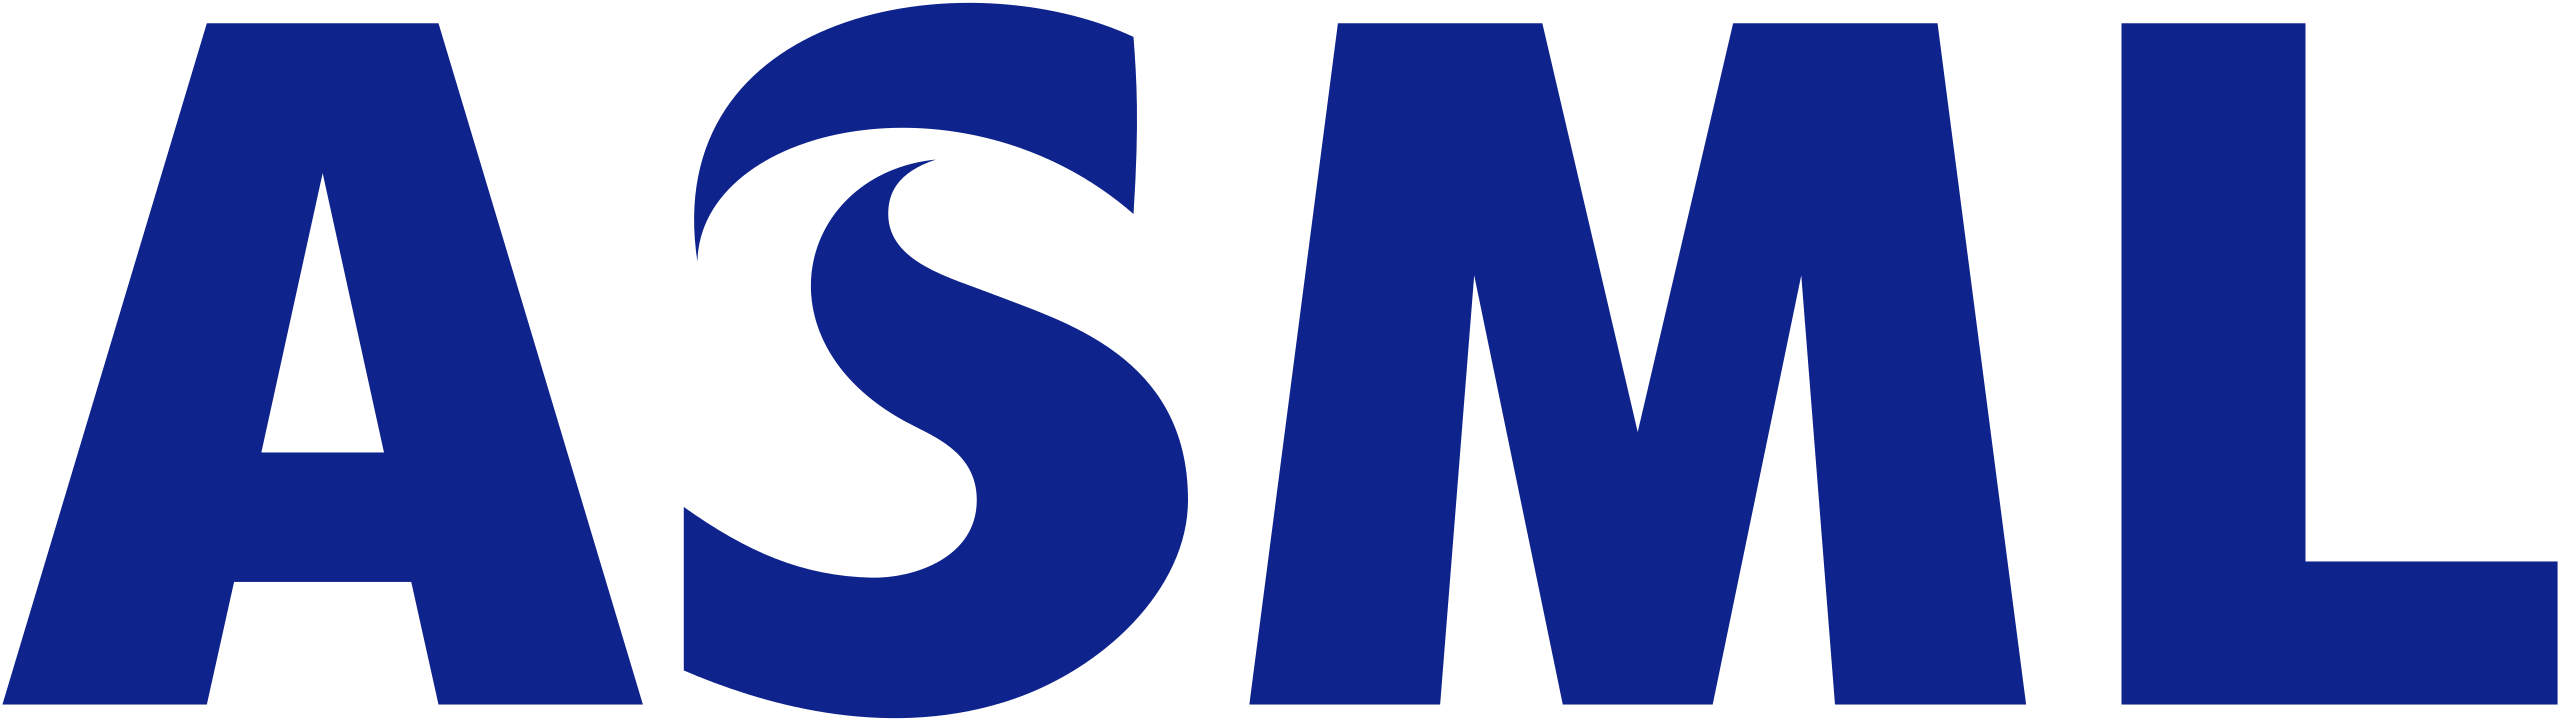 ASML's logo